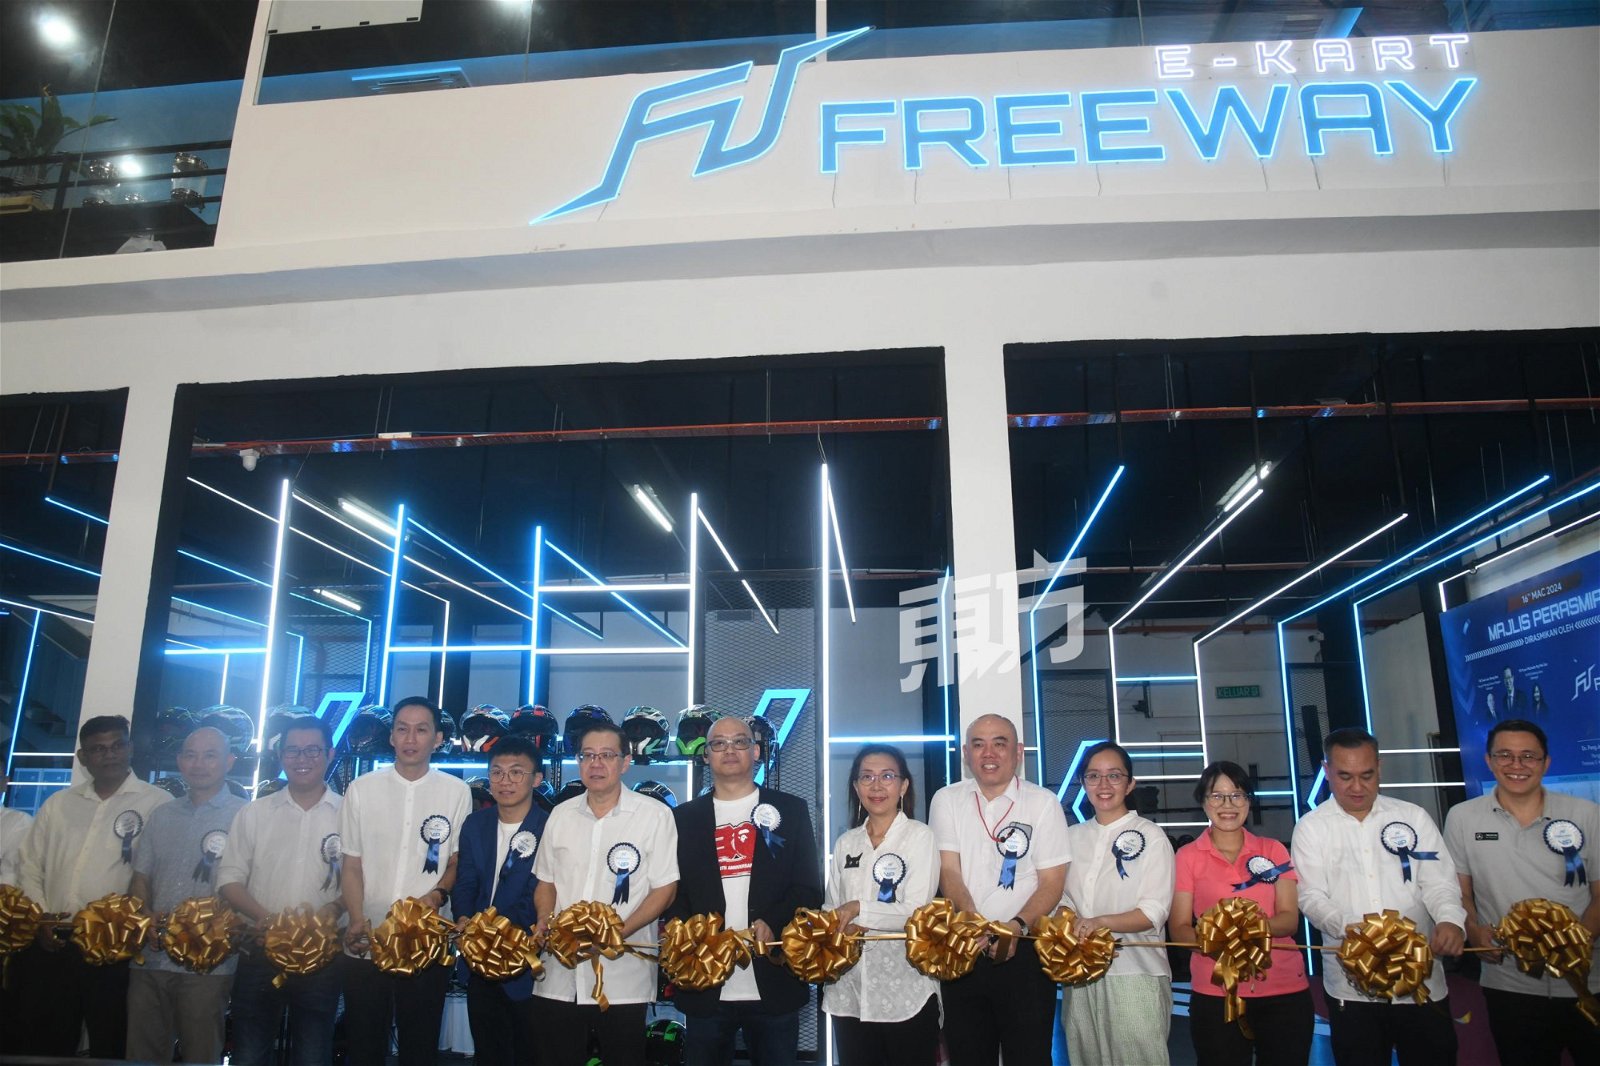 林冠英（左6）、Freeway E-Kart公司董事彭俊豪（左5）和张金辉（左7），以及一众行动党国州议员为Freeway E-Kart开幕剪彩。